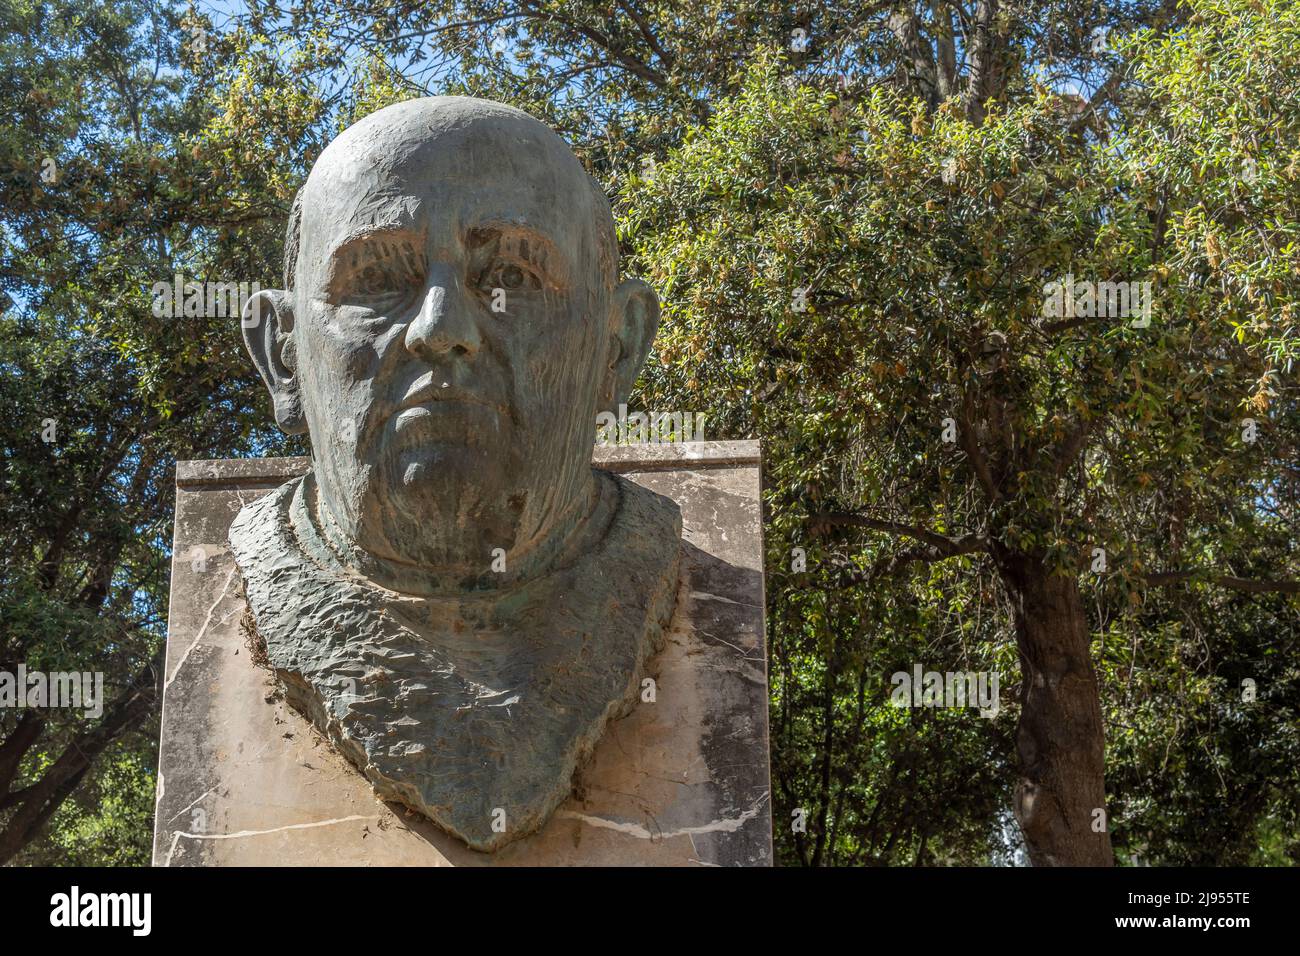 Manacor, Espagne; mai 14 2022: Buste sculptural en bronze de Mossen Antoni Alcover, situé dans un parc dans le centre historique de la ville majorquine de Manaco Banque D'Images